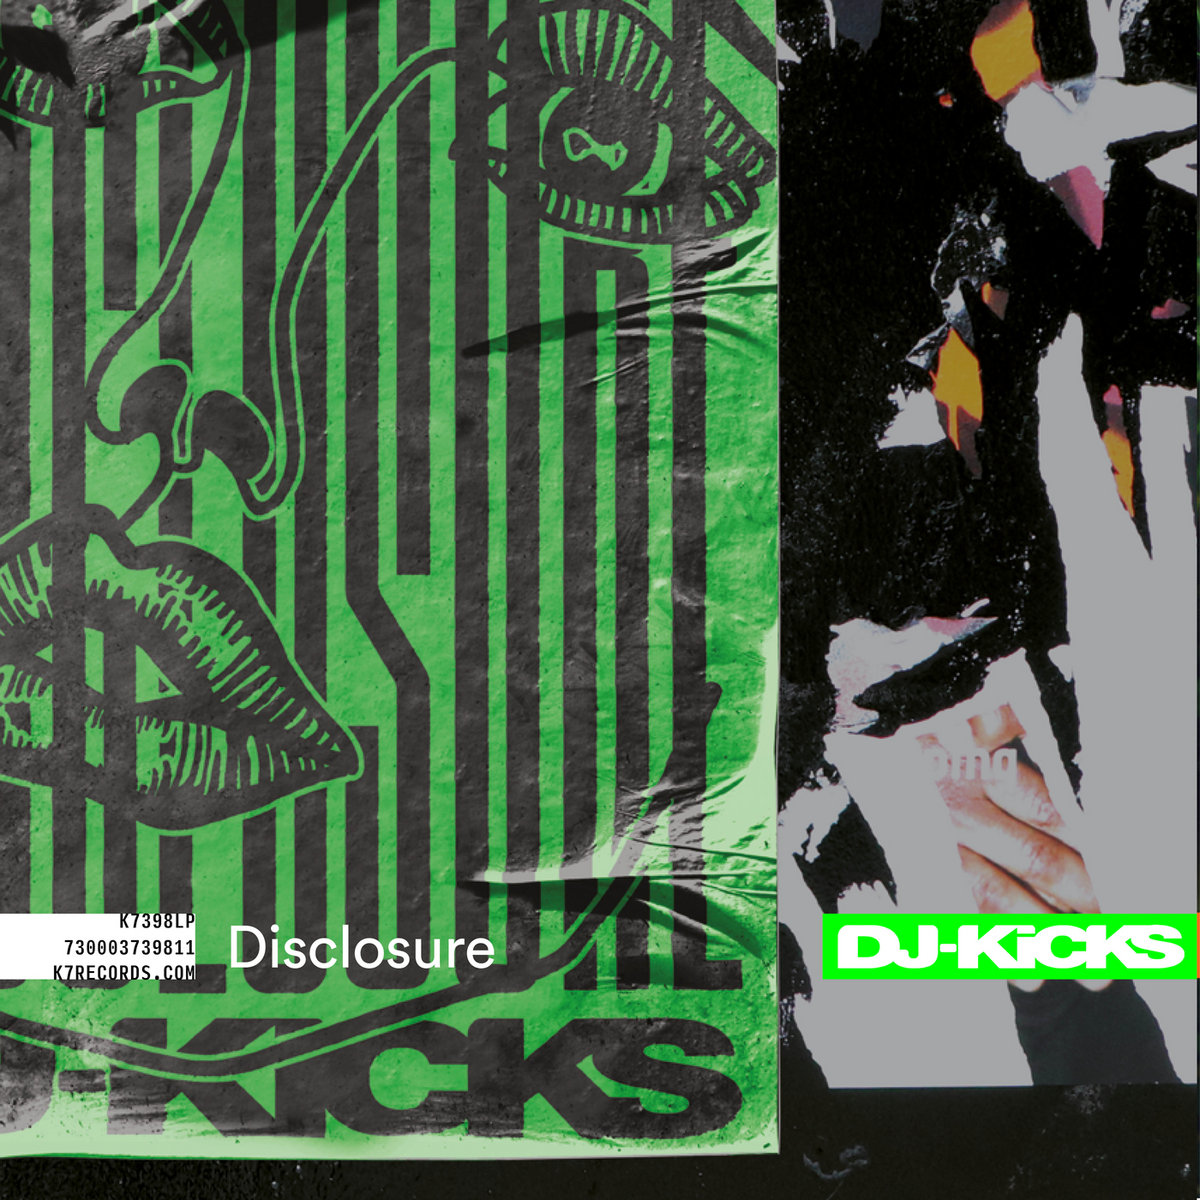 Disclosure - DJ-Kicks [K7398D]